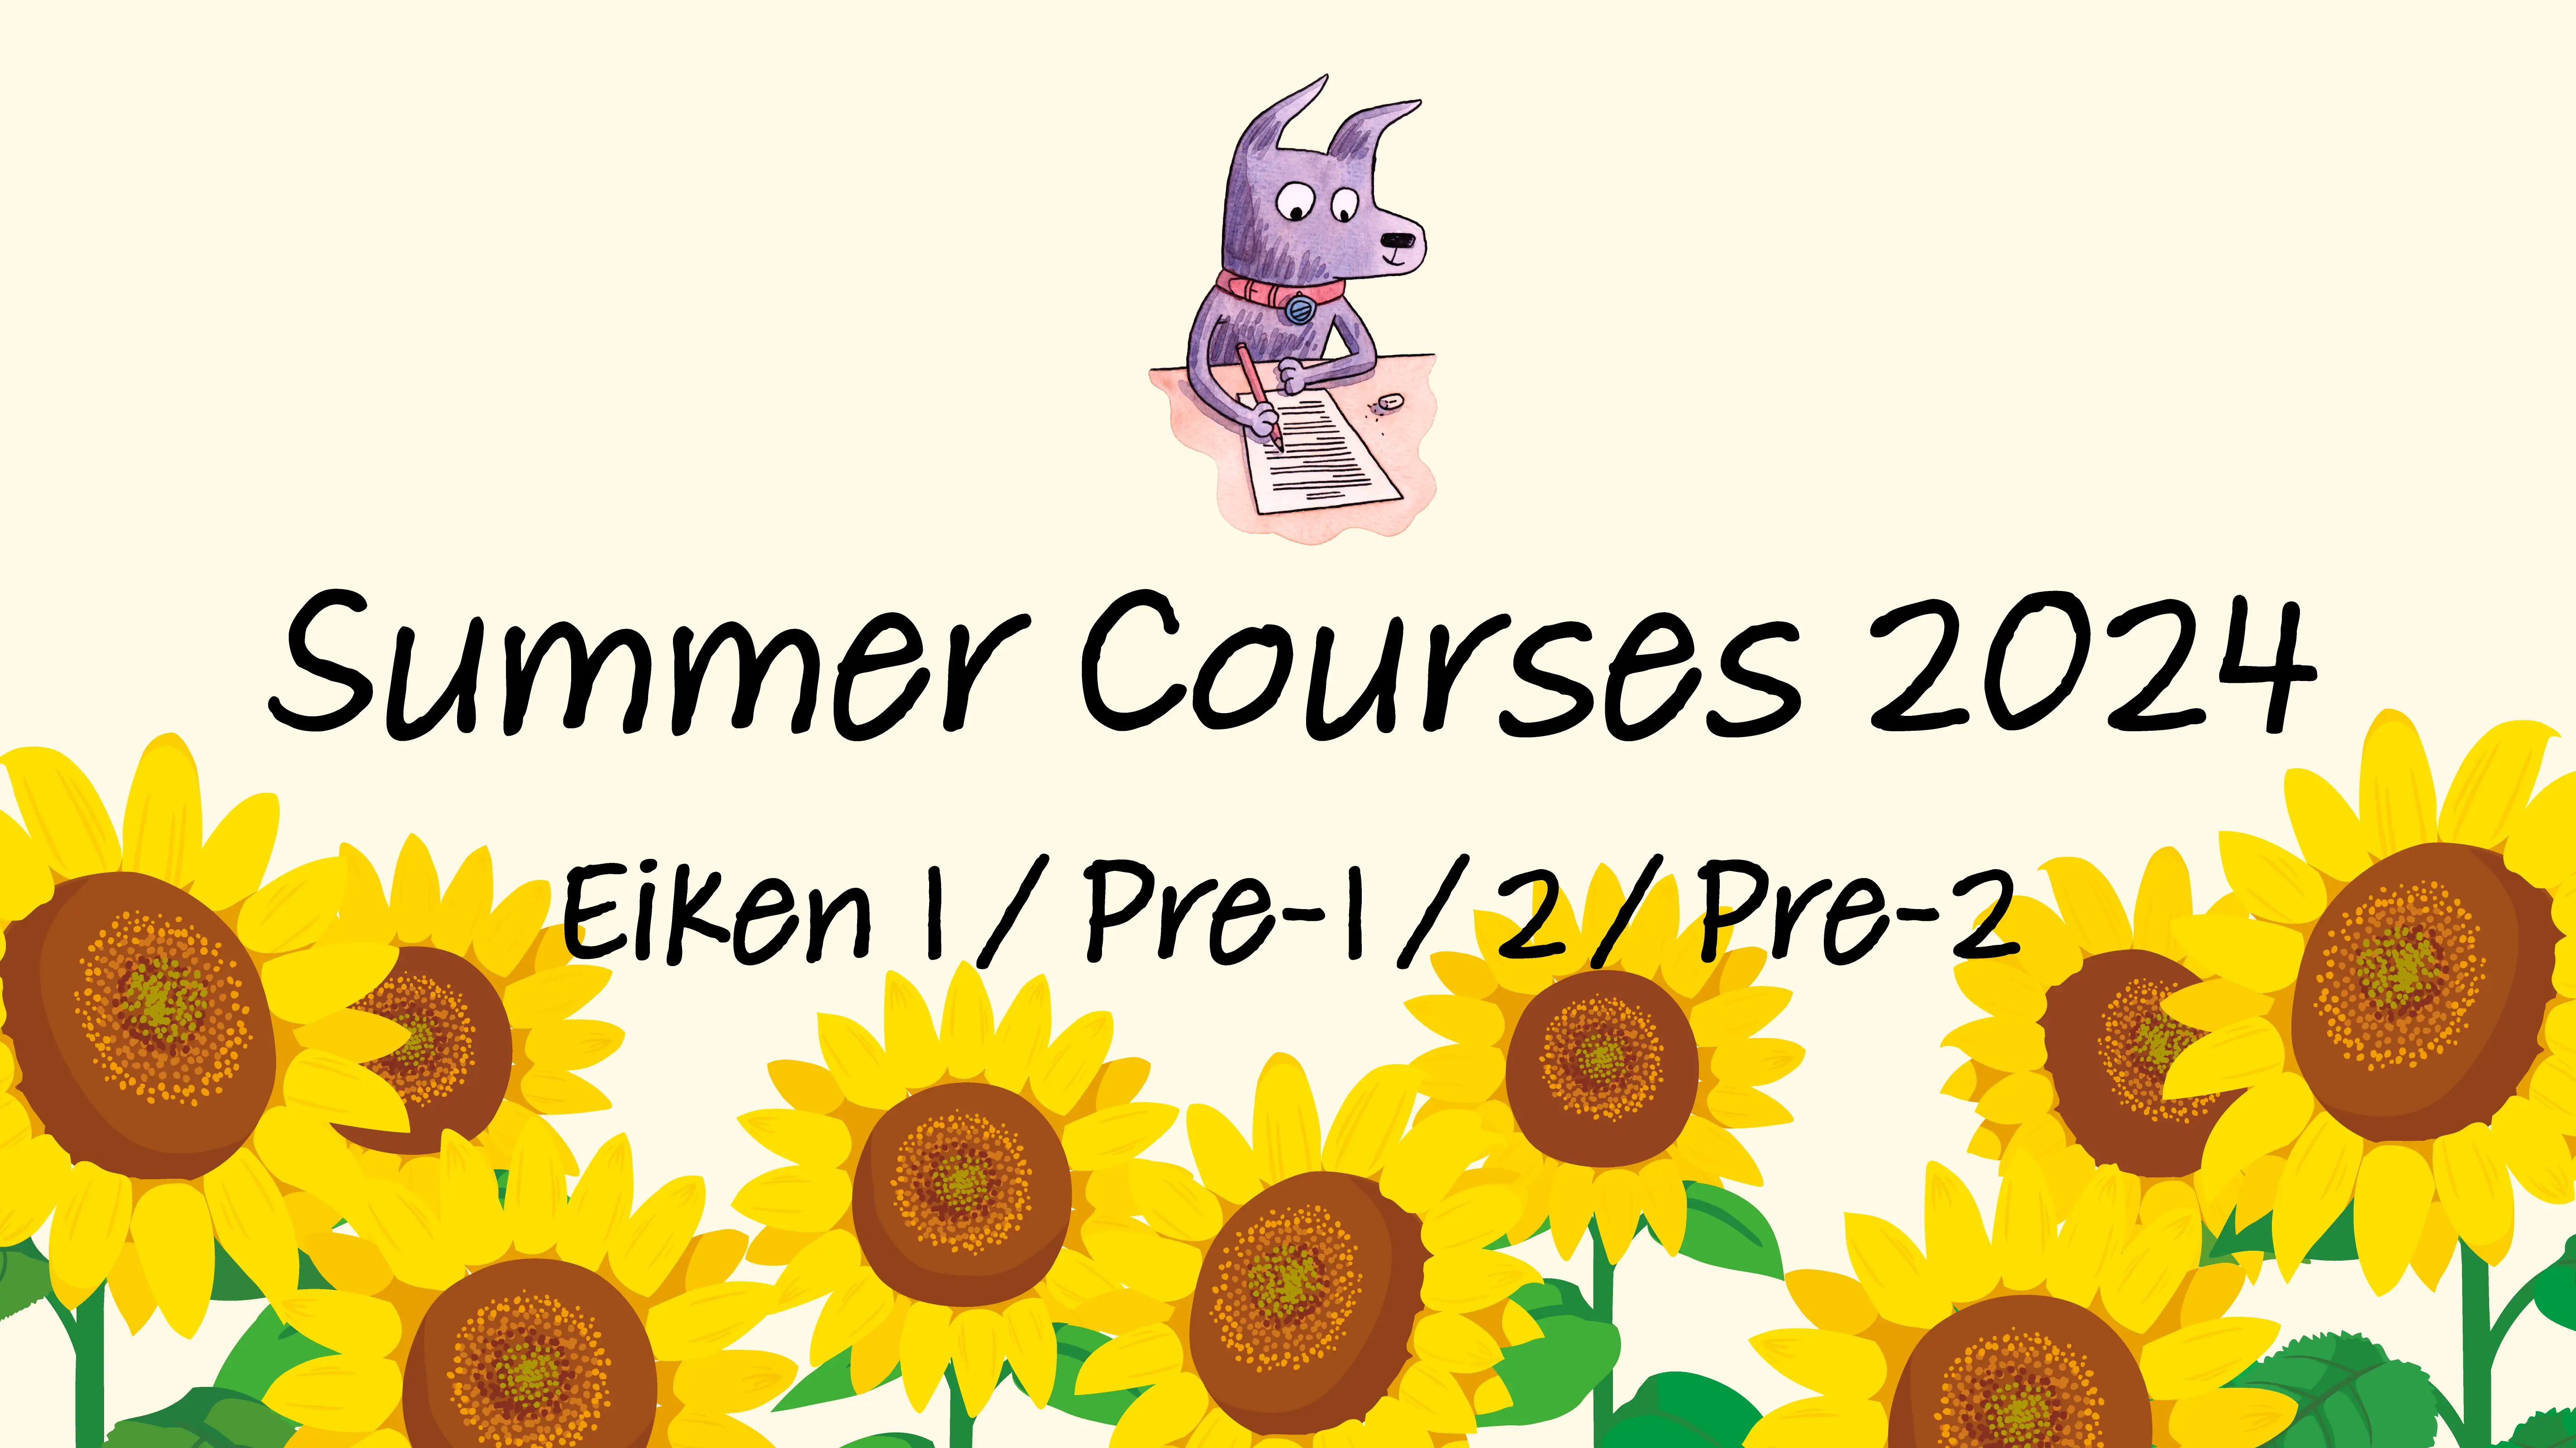 Summer Courses 2024: Eiken 1/Pre-1/2/Pre-2